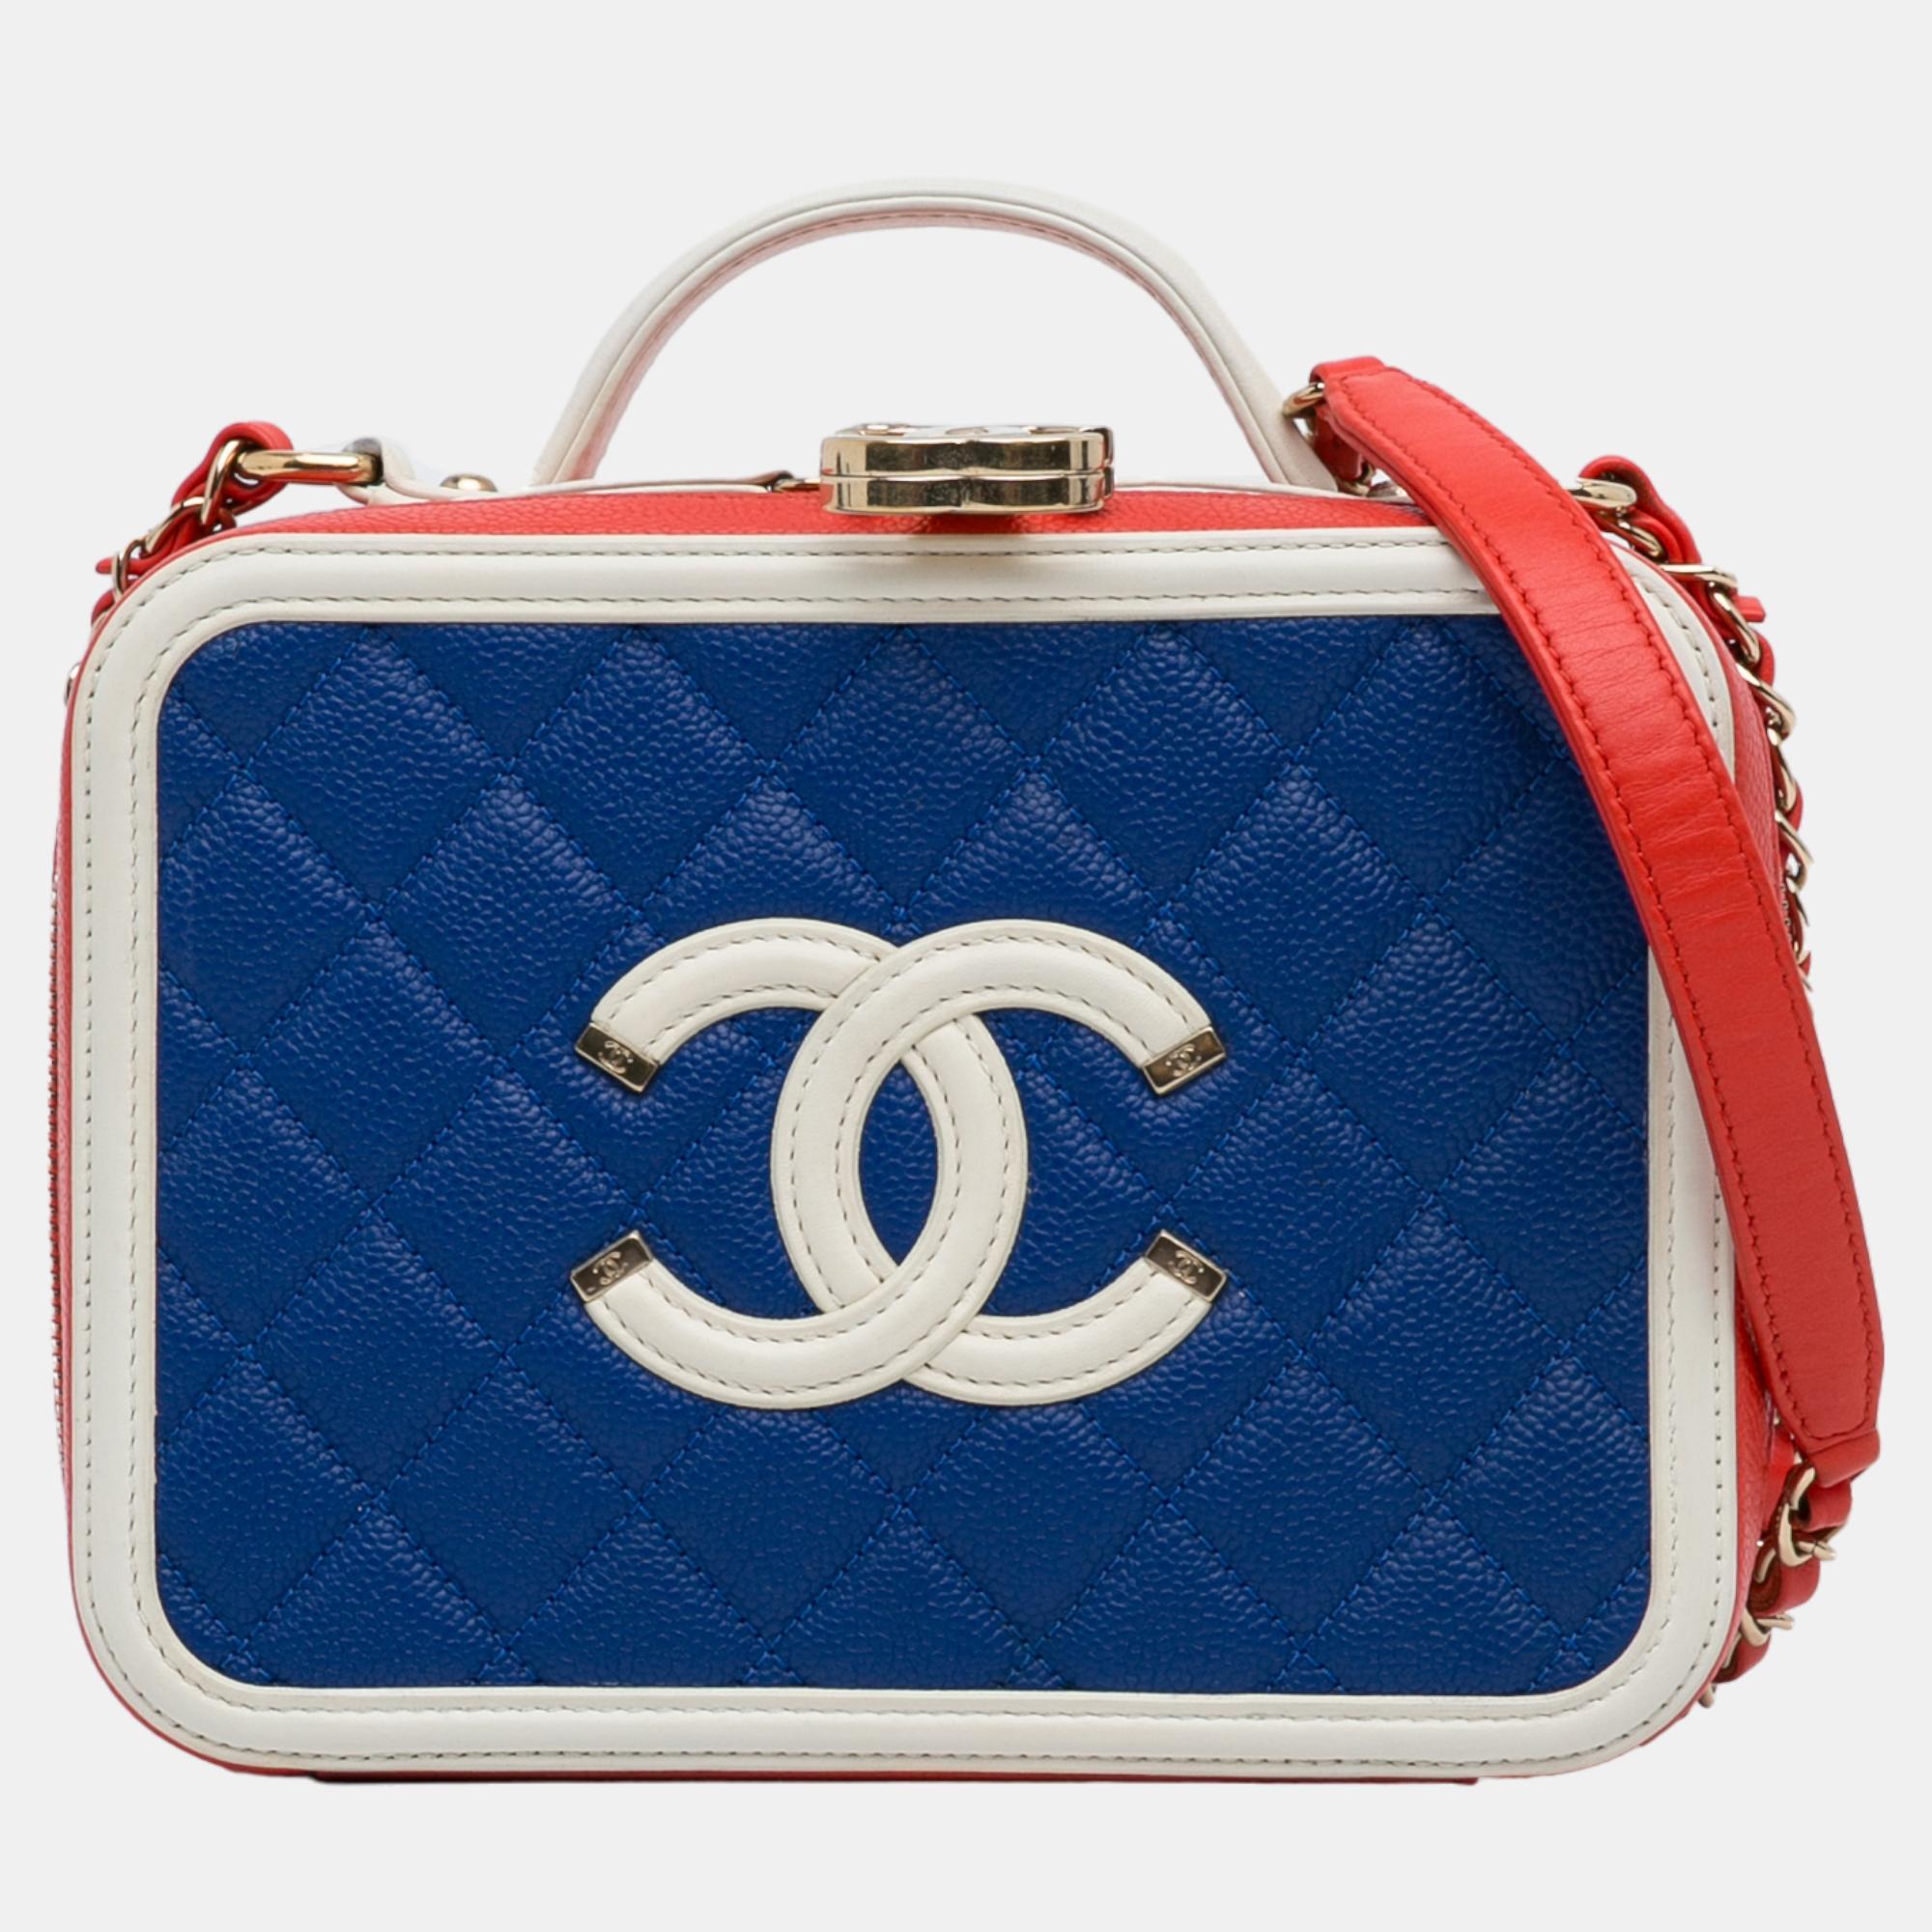 Chanel blue/red medium caviar filigree vanity case